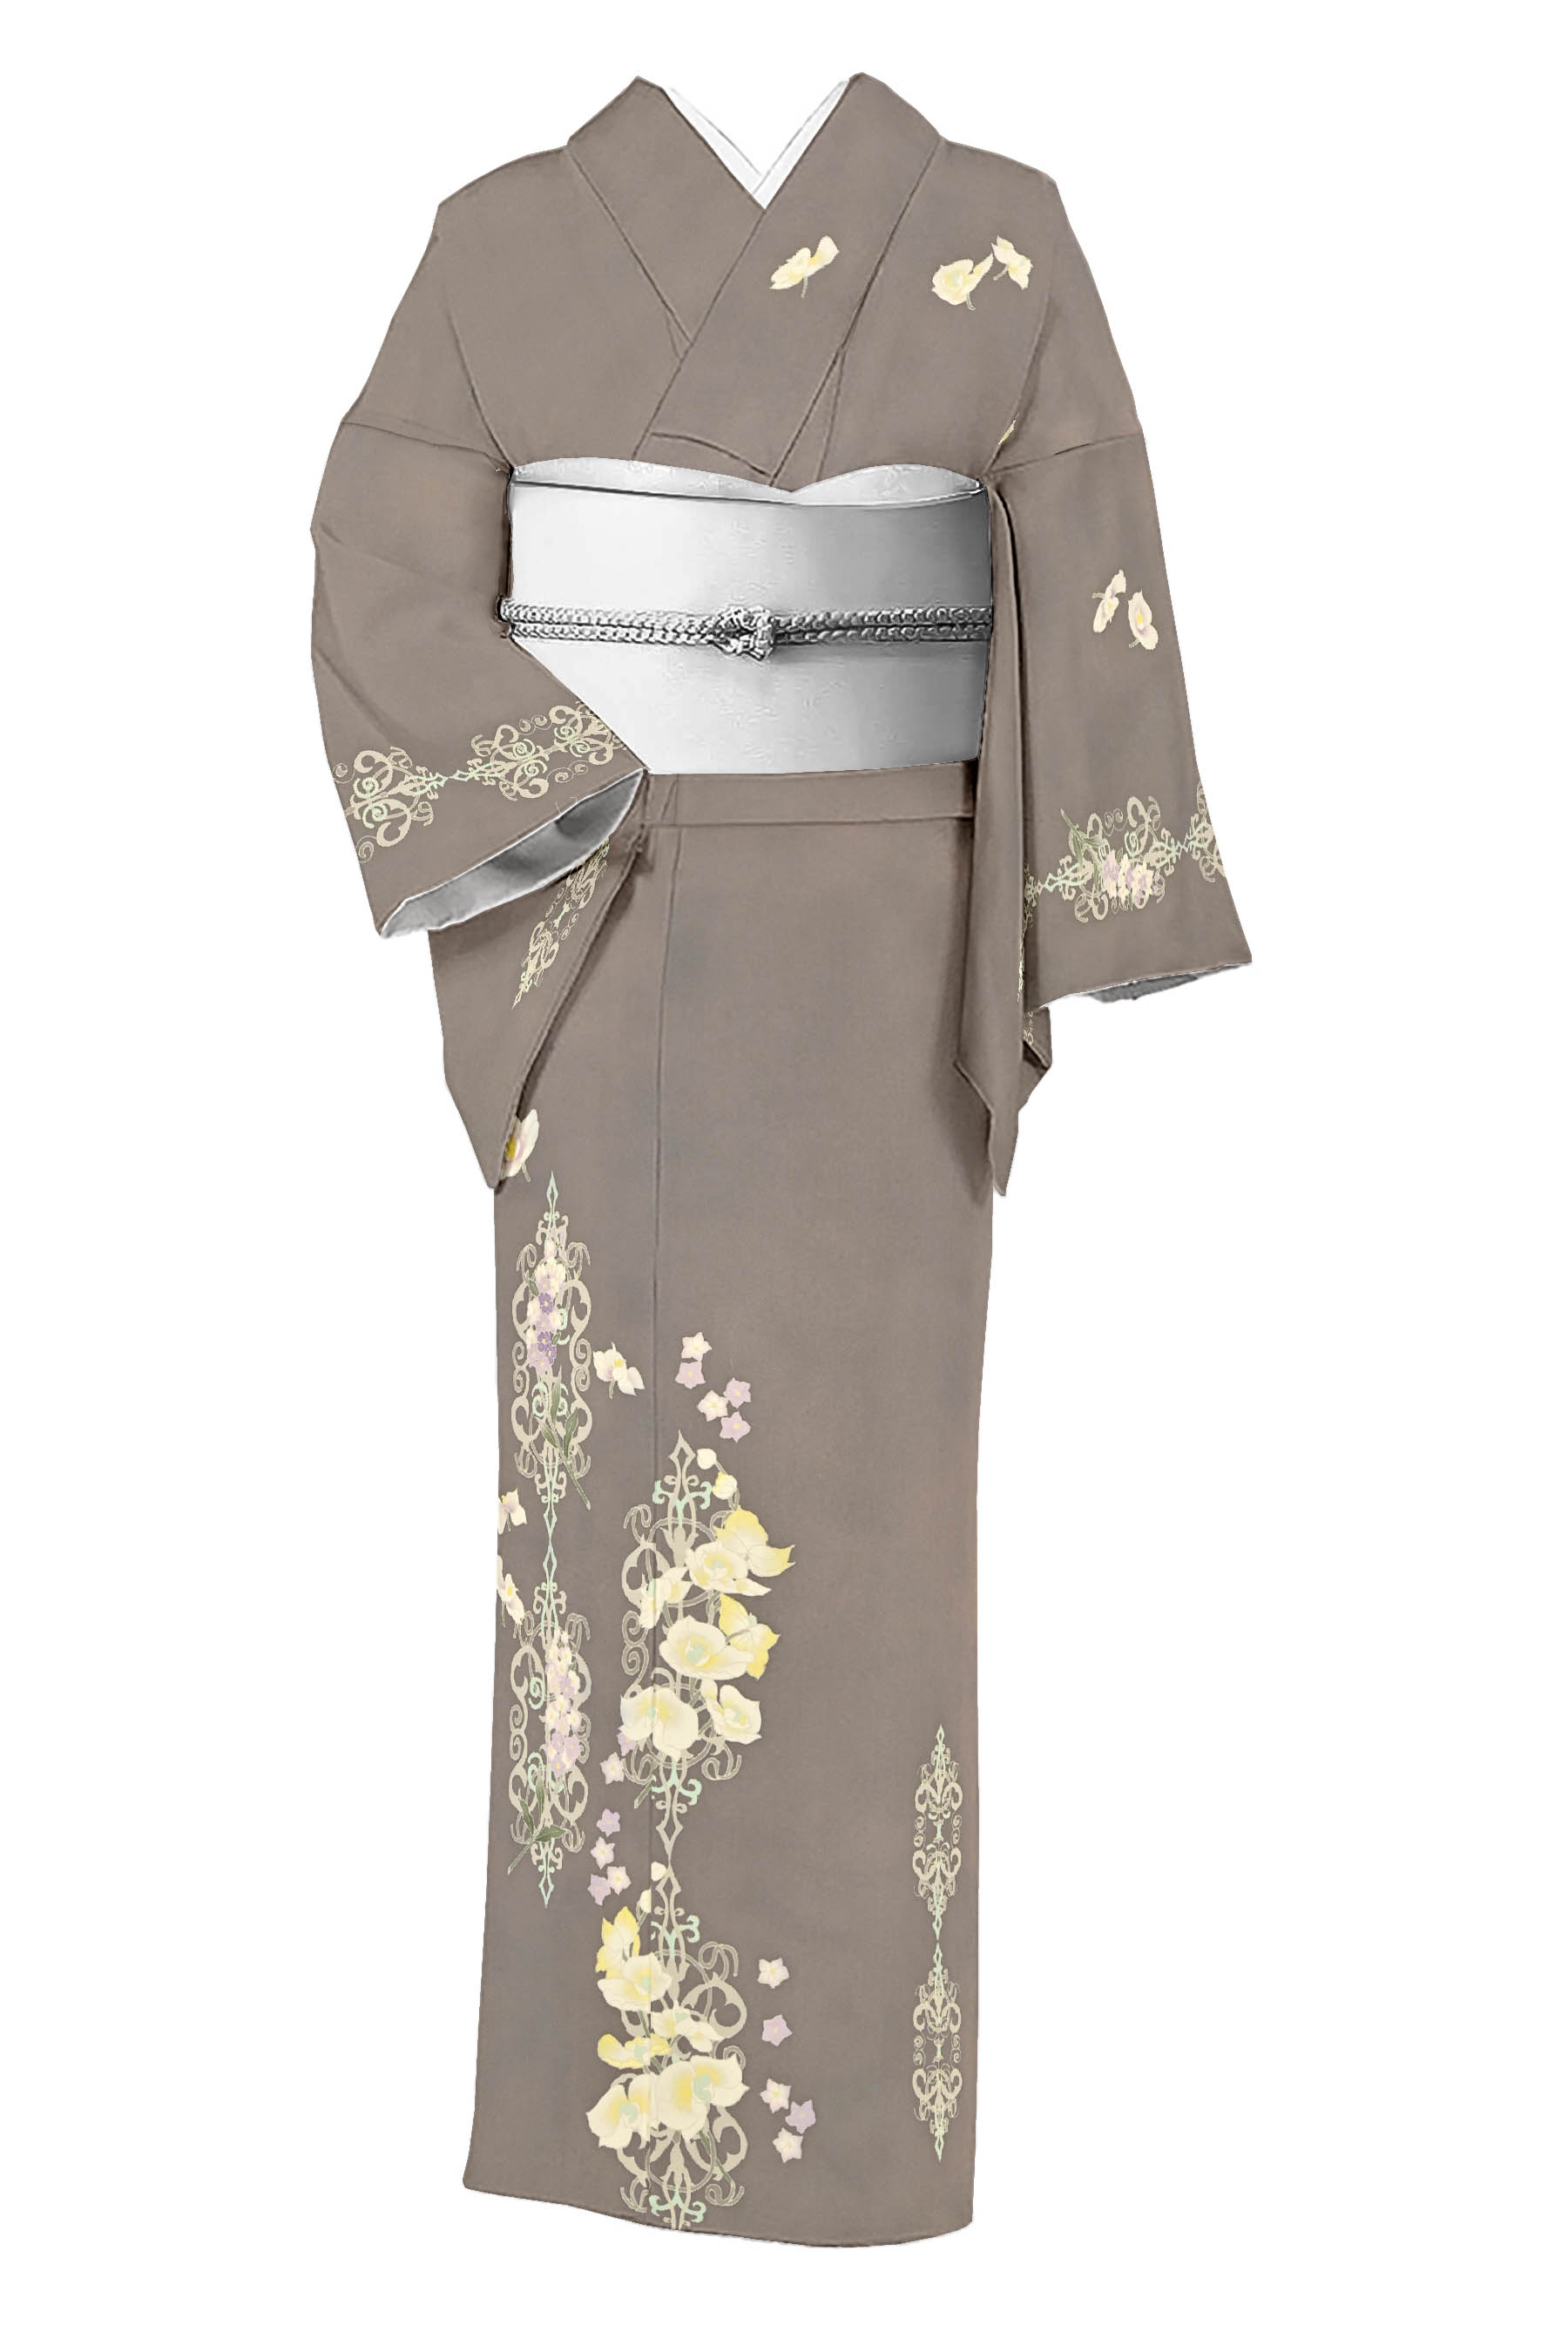 の販売【新品】ひでや工房 綿レース半幅帯 アイボリー 着物 kimono 632 着物・浴衣